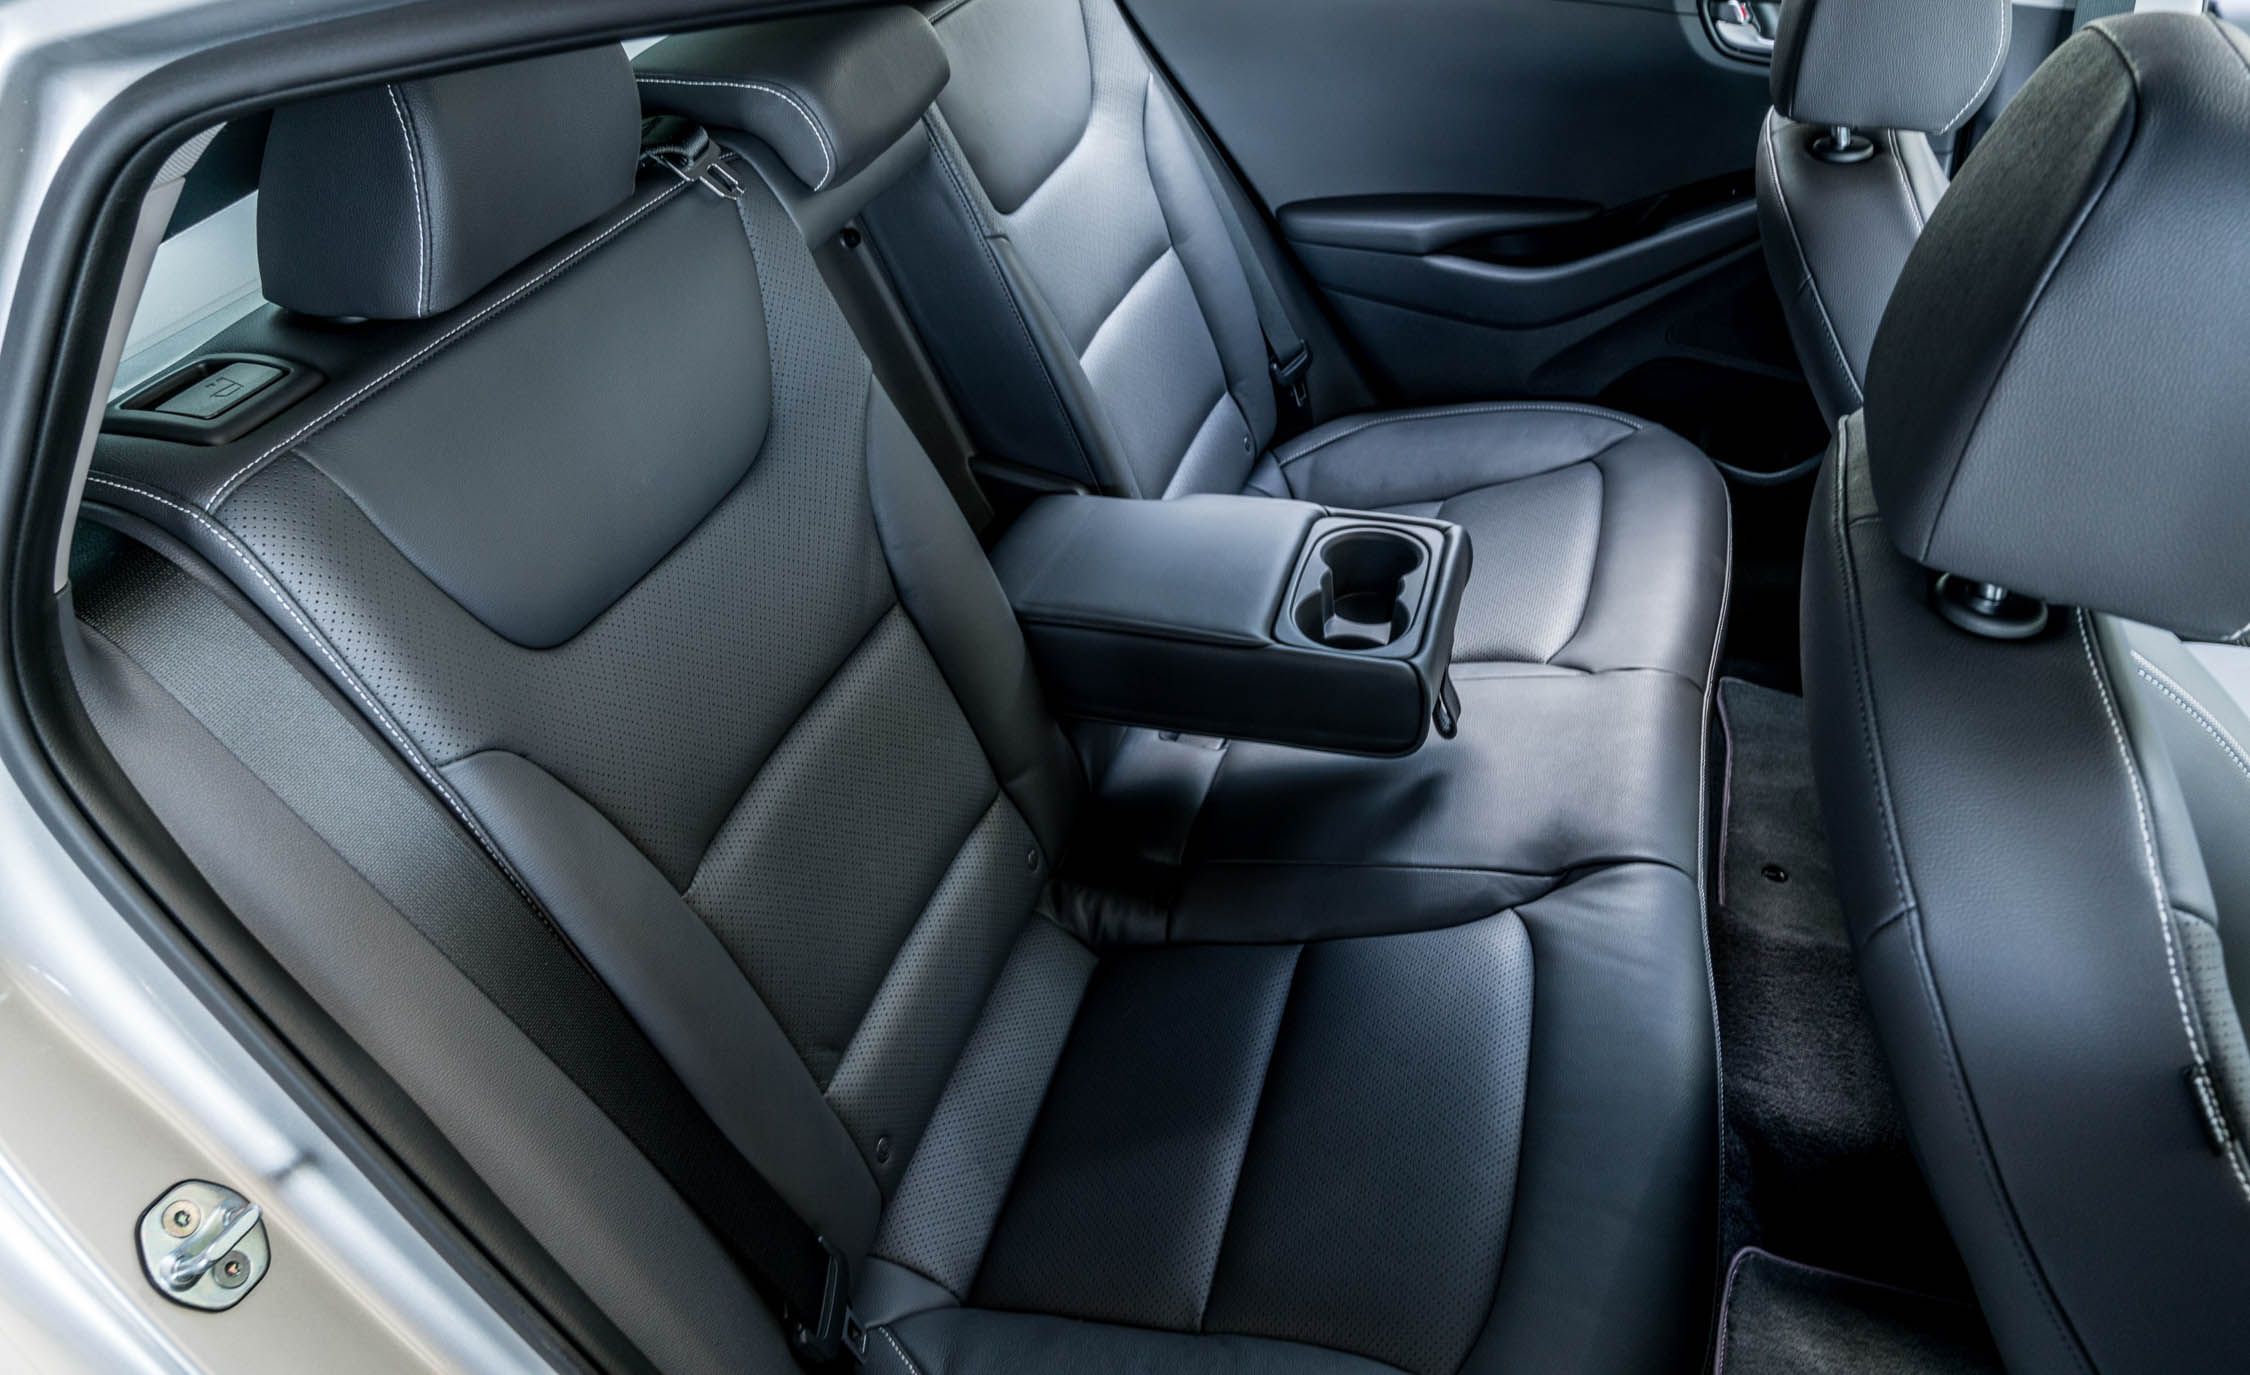 2017 Hyundai Ioniq Electric Interior Seats Rear (View 50 of 67)